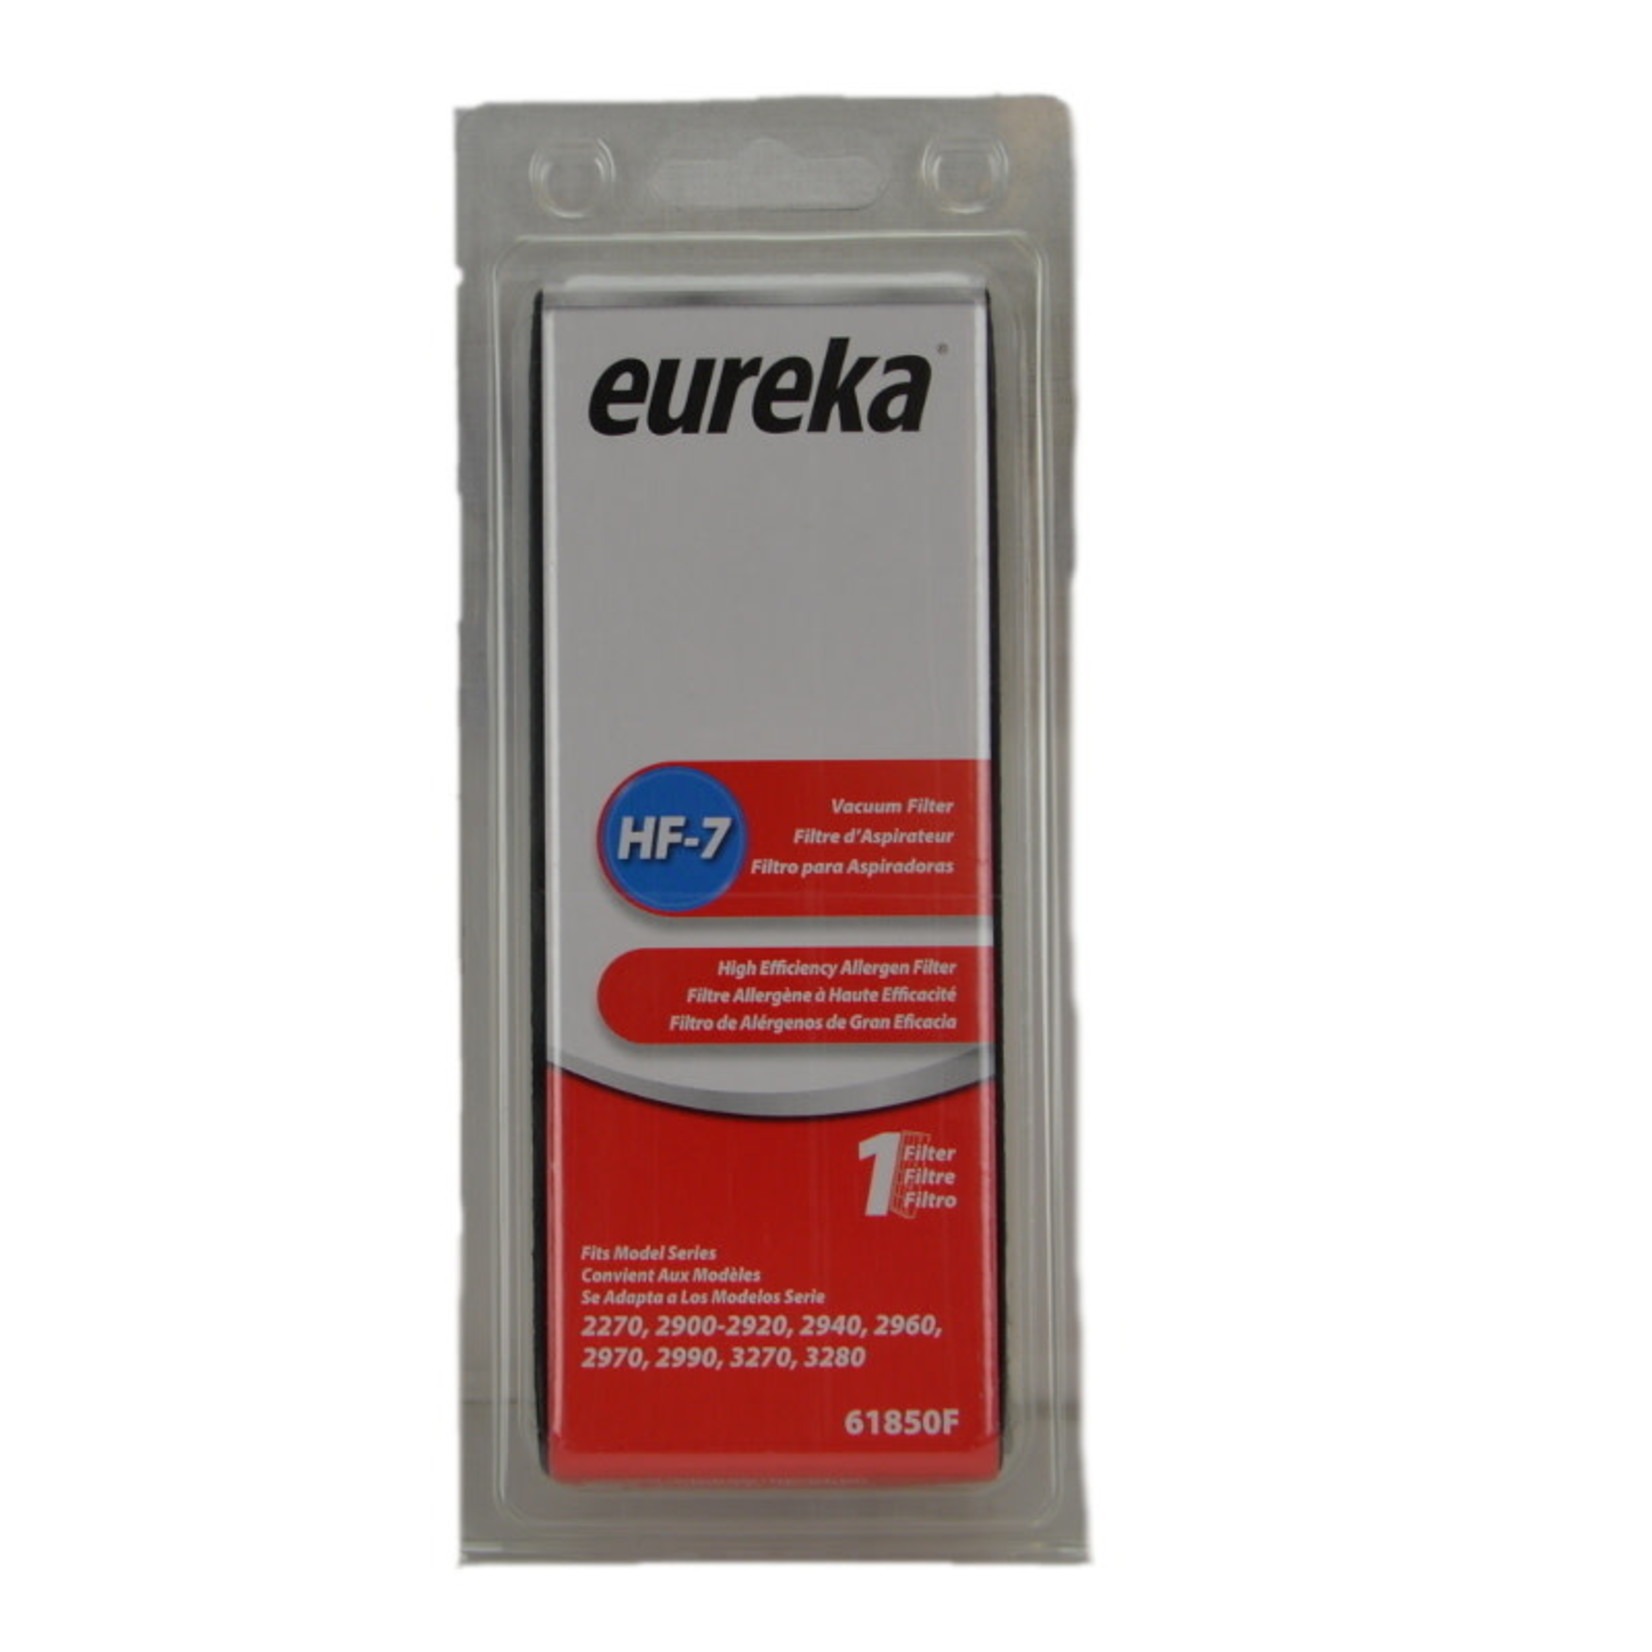 Eureka Eureka Style HF-7 Filter